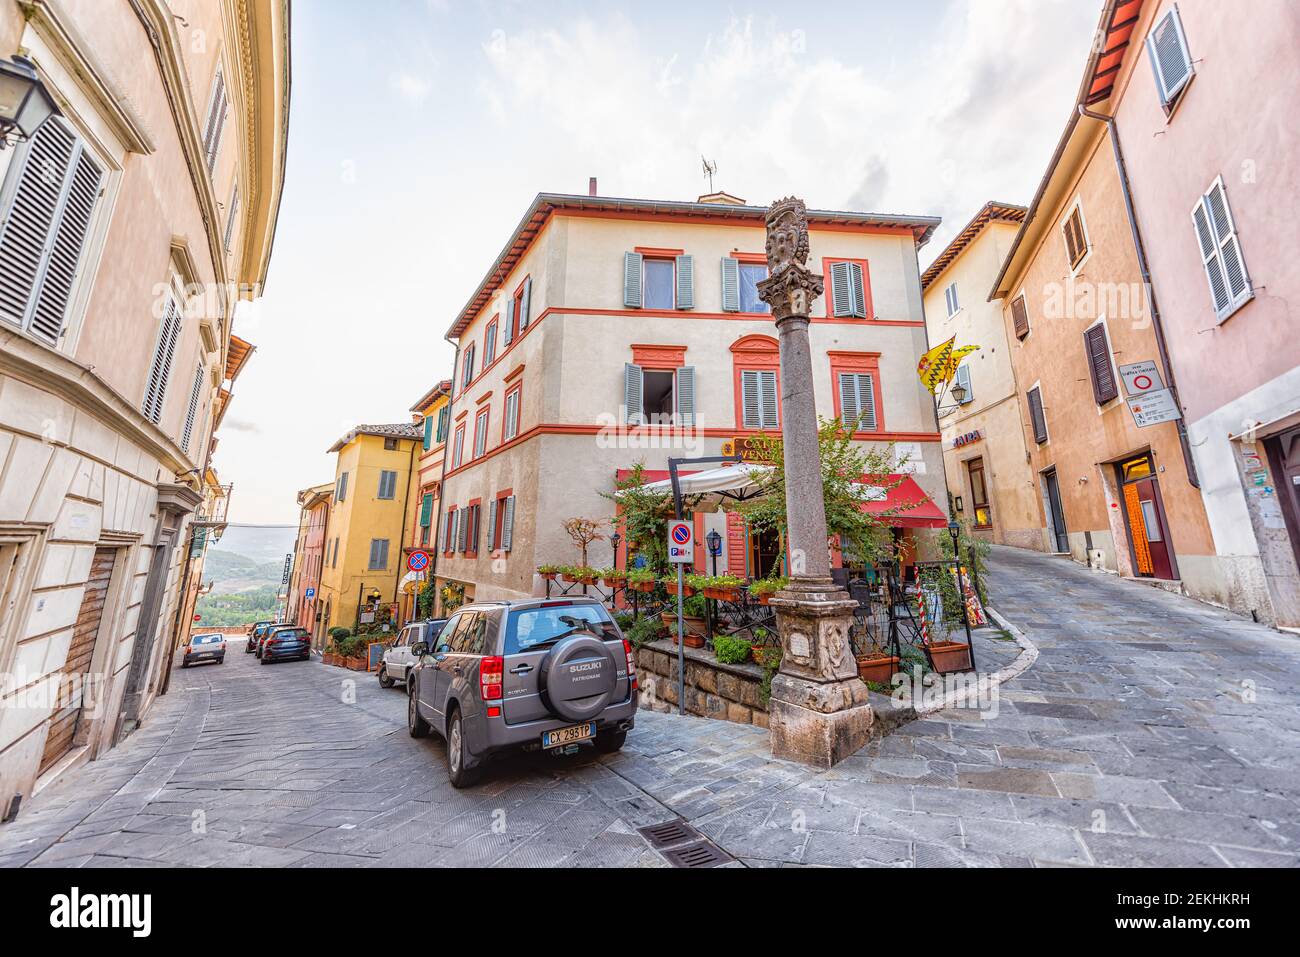 Chiusi, Italien - 25. August 2018: Straßenplatz mit berühmtem Restaurant im kleinen Dorf in der Toskana Tagsüber niemand und Stein Architektur Autos Stockfoto